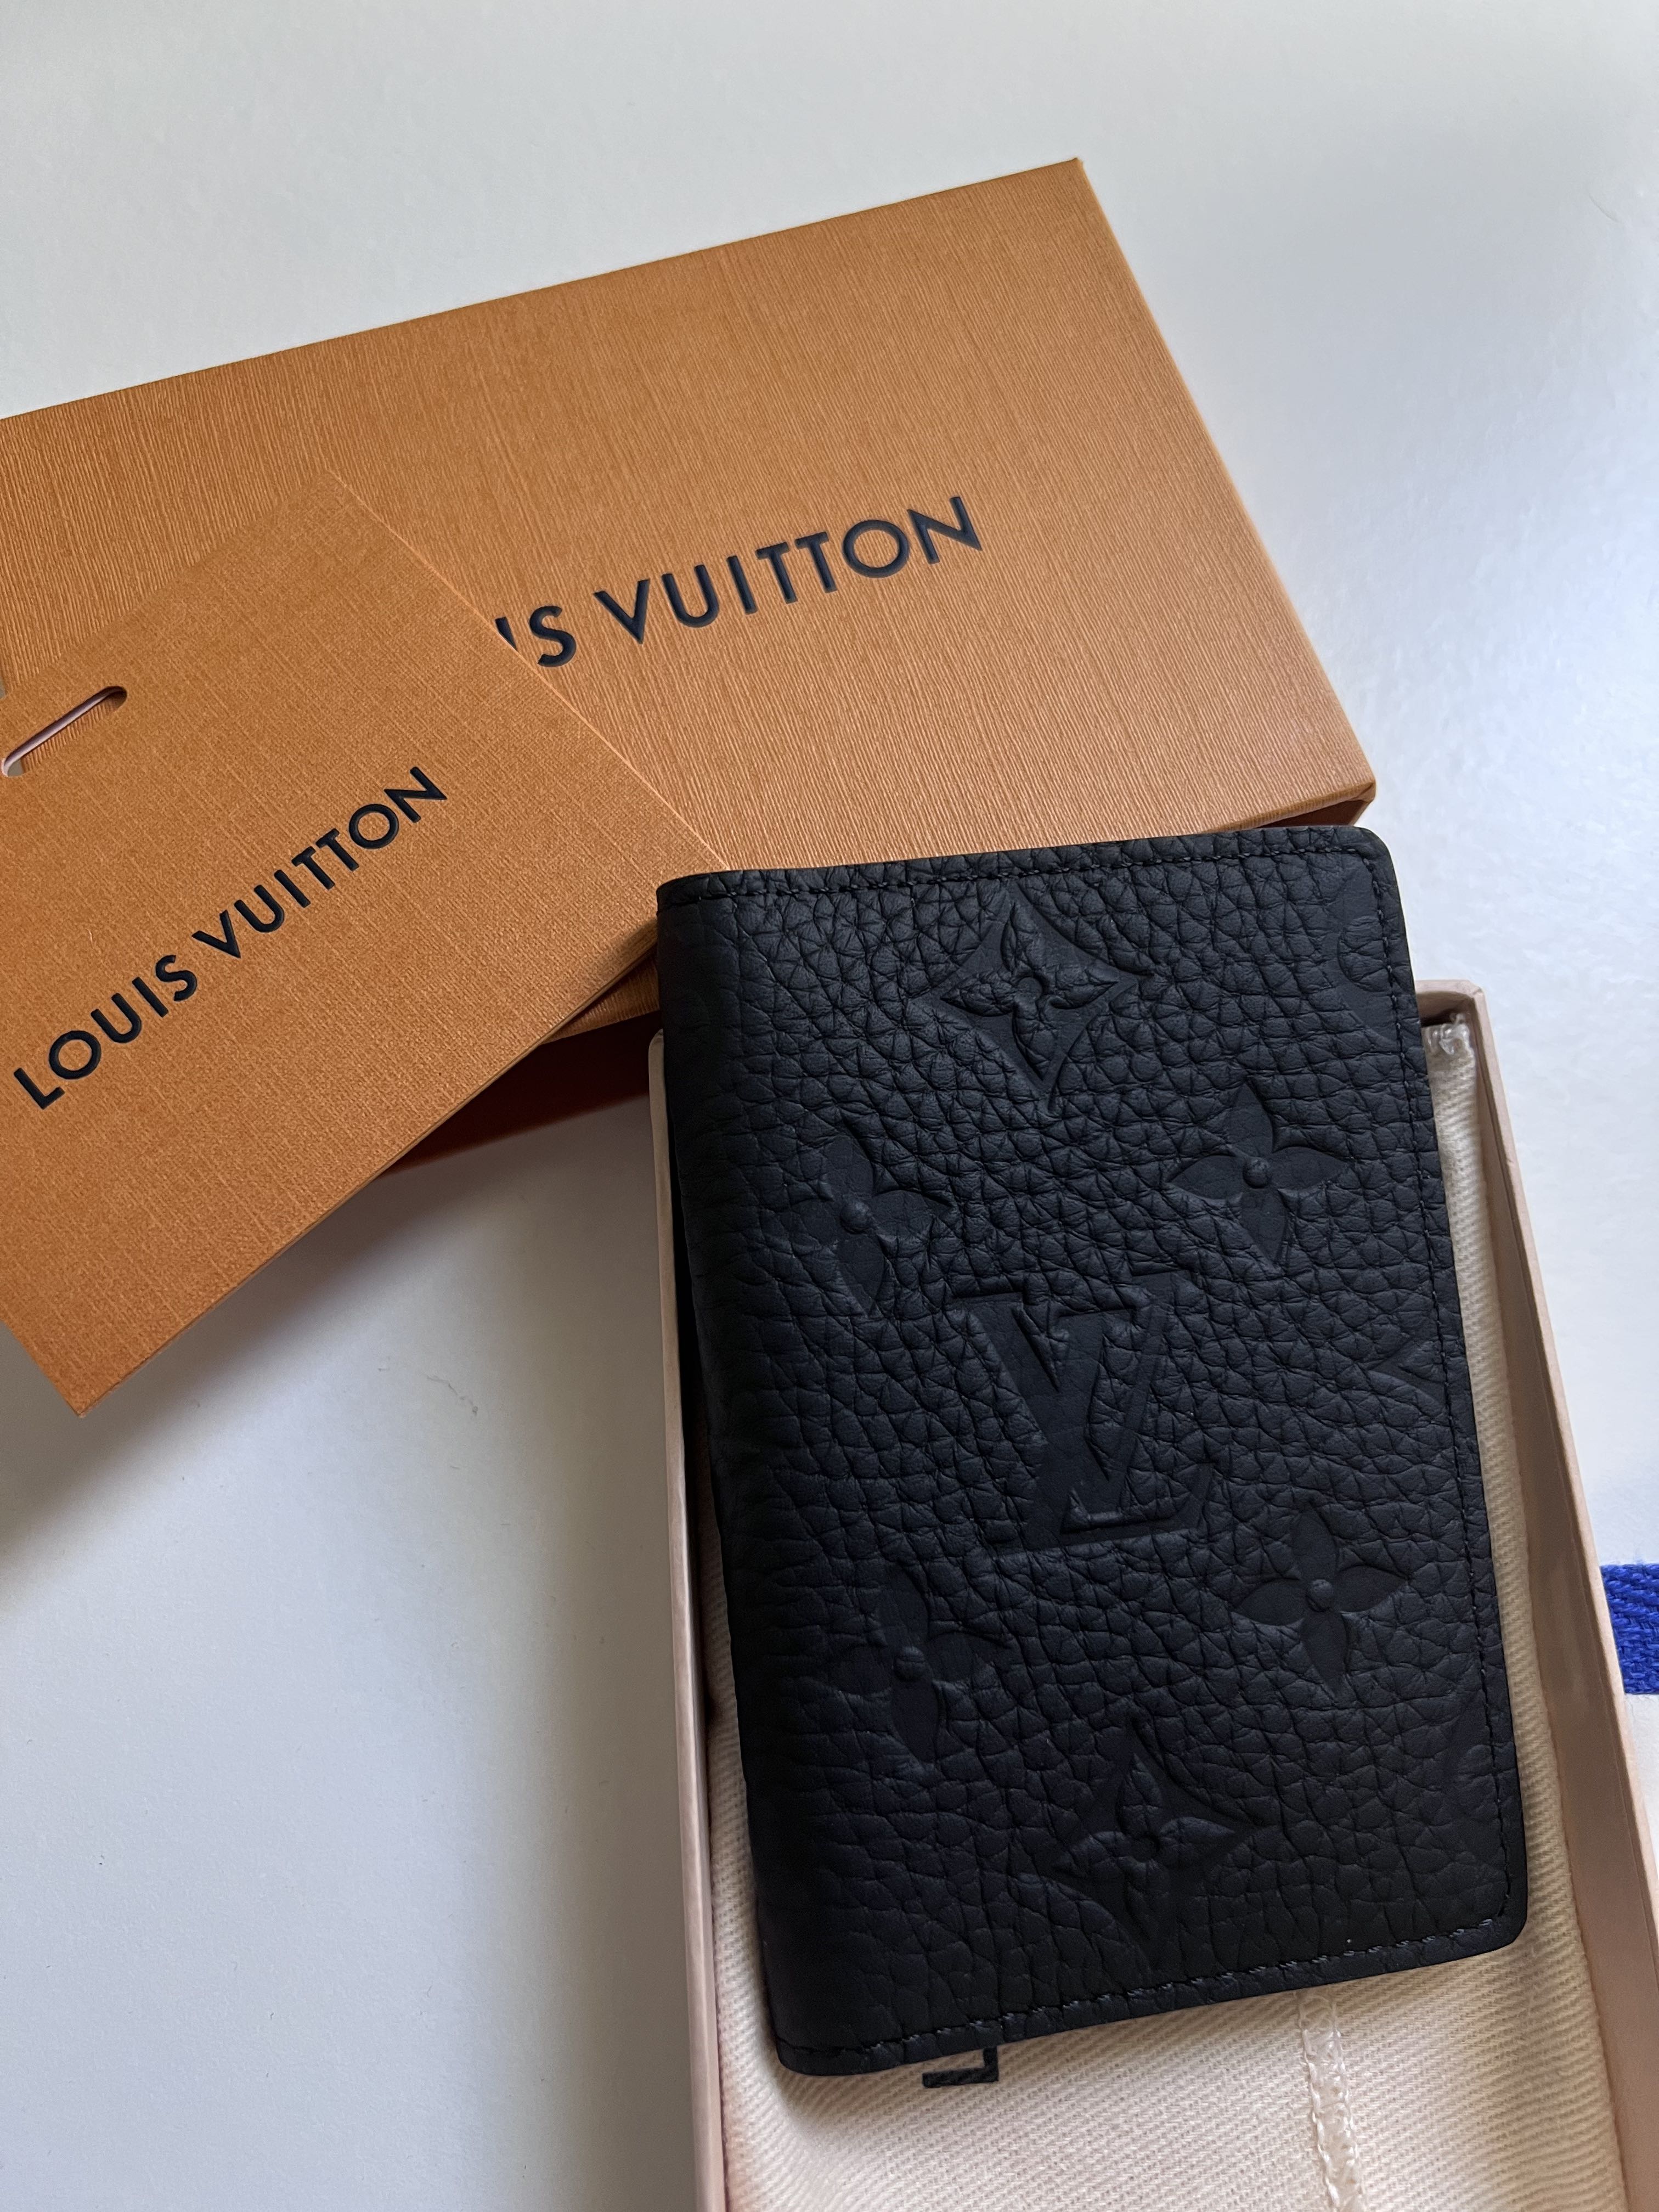 Louis Vuitton Taurillon Leather Pocket Organizer M69044